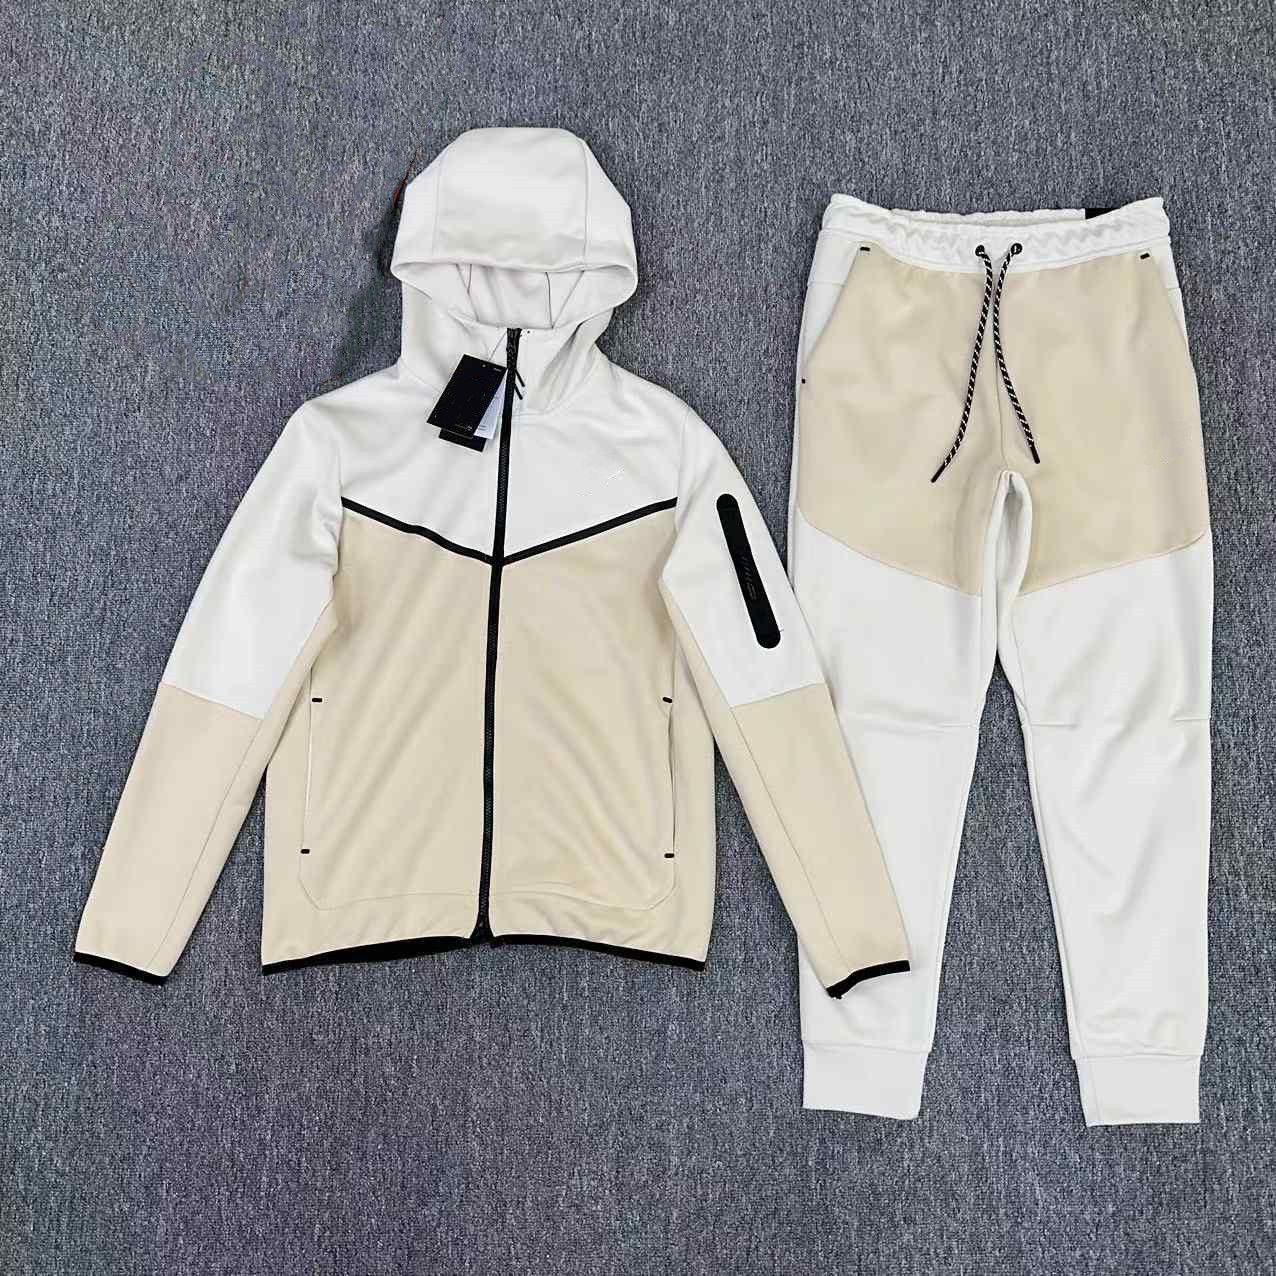 Set=Jacket+Pant*14